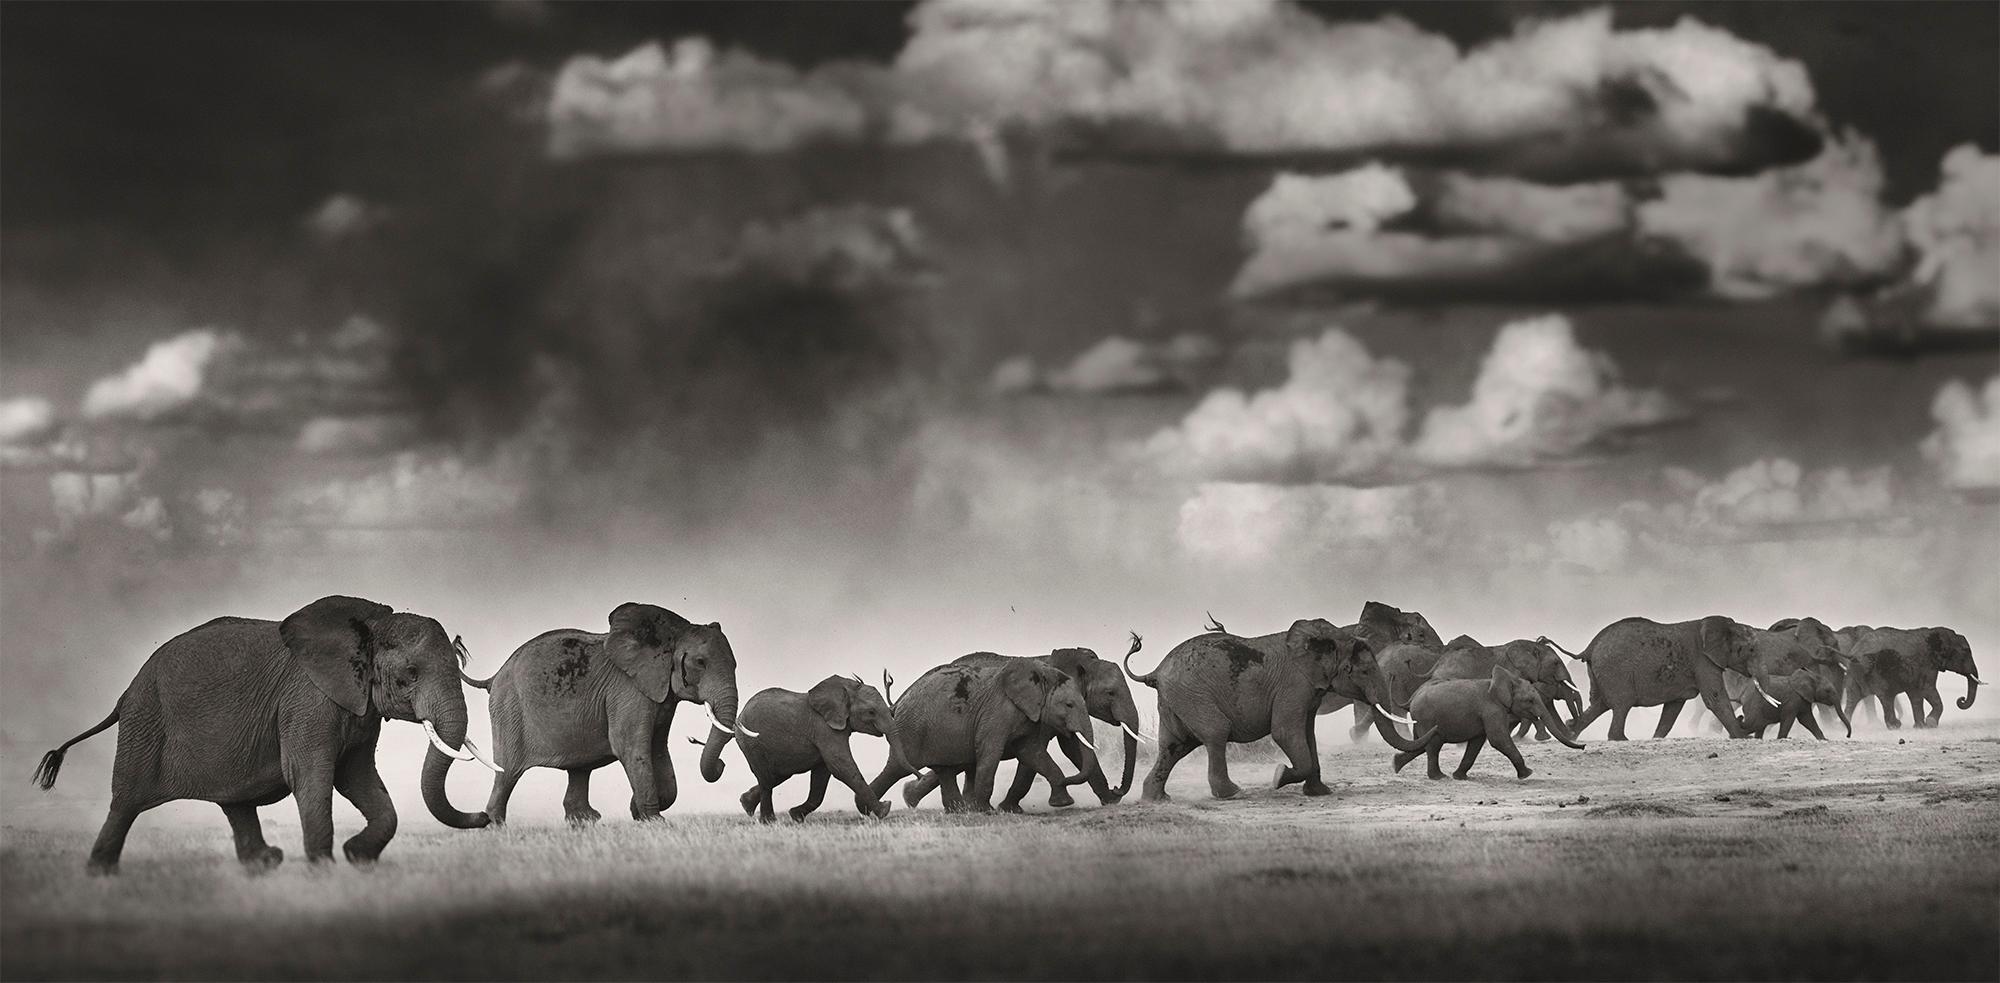 Thunderstorm II, Platin, Tier, Elefant, Schwarz-Weiß-Fotografie – Photograph von Joachim Schmeisser